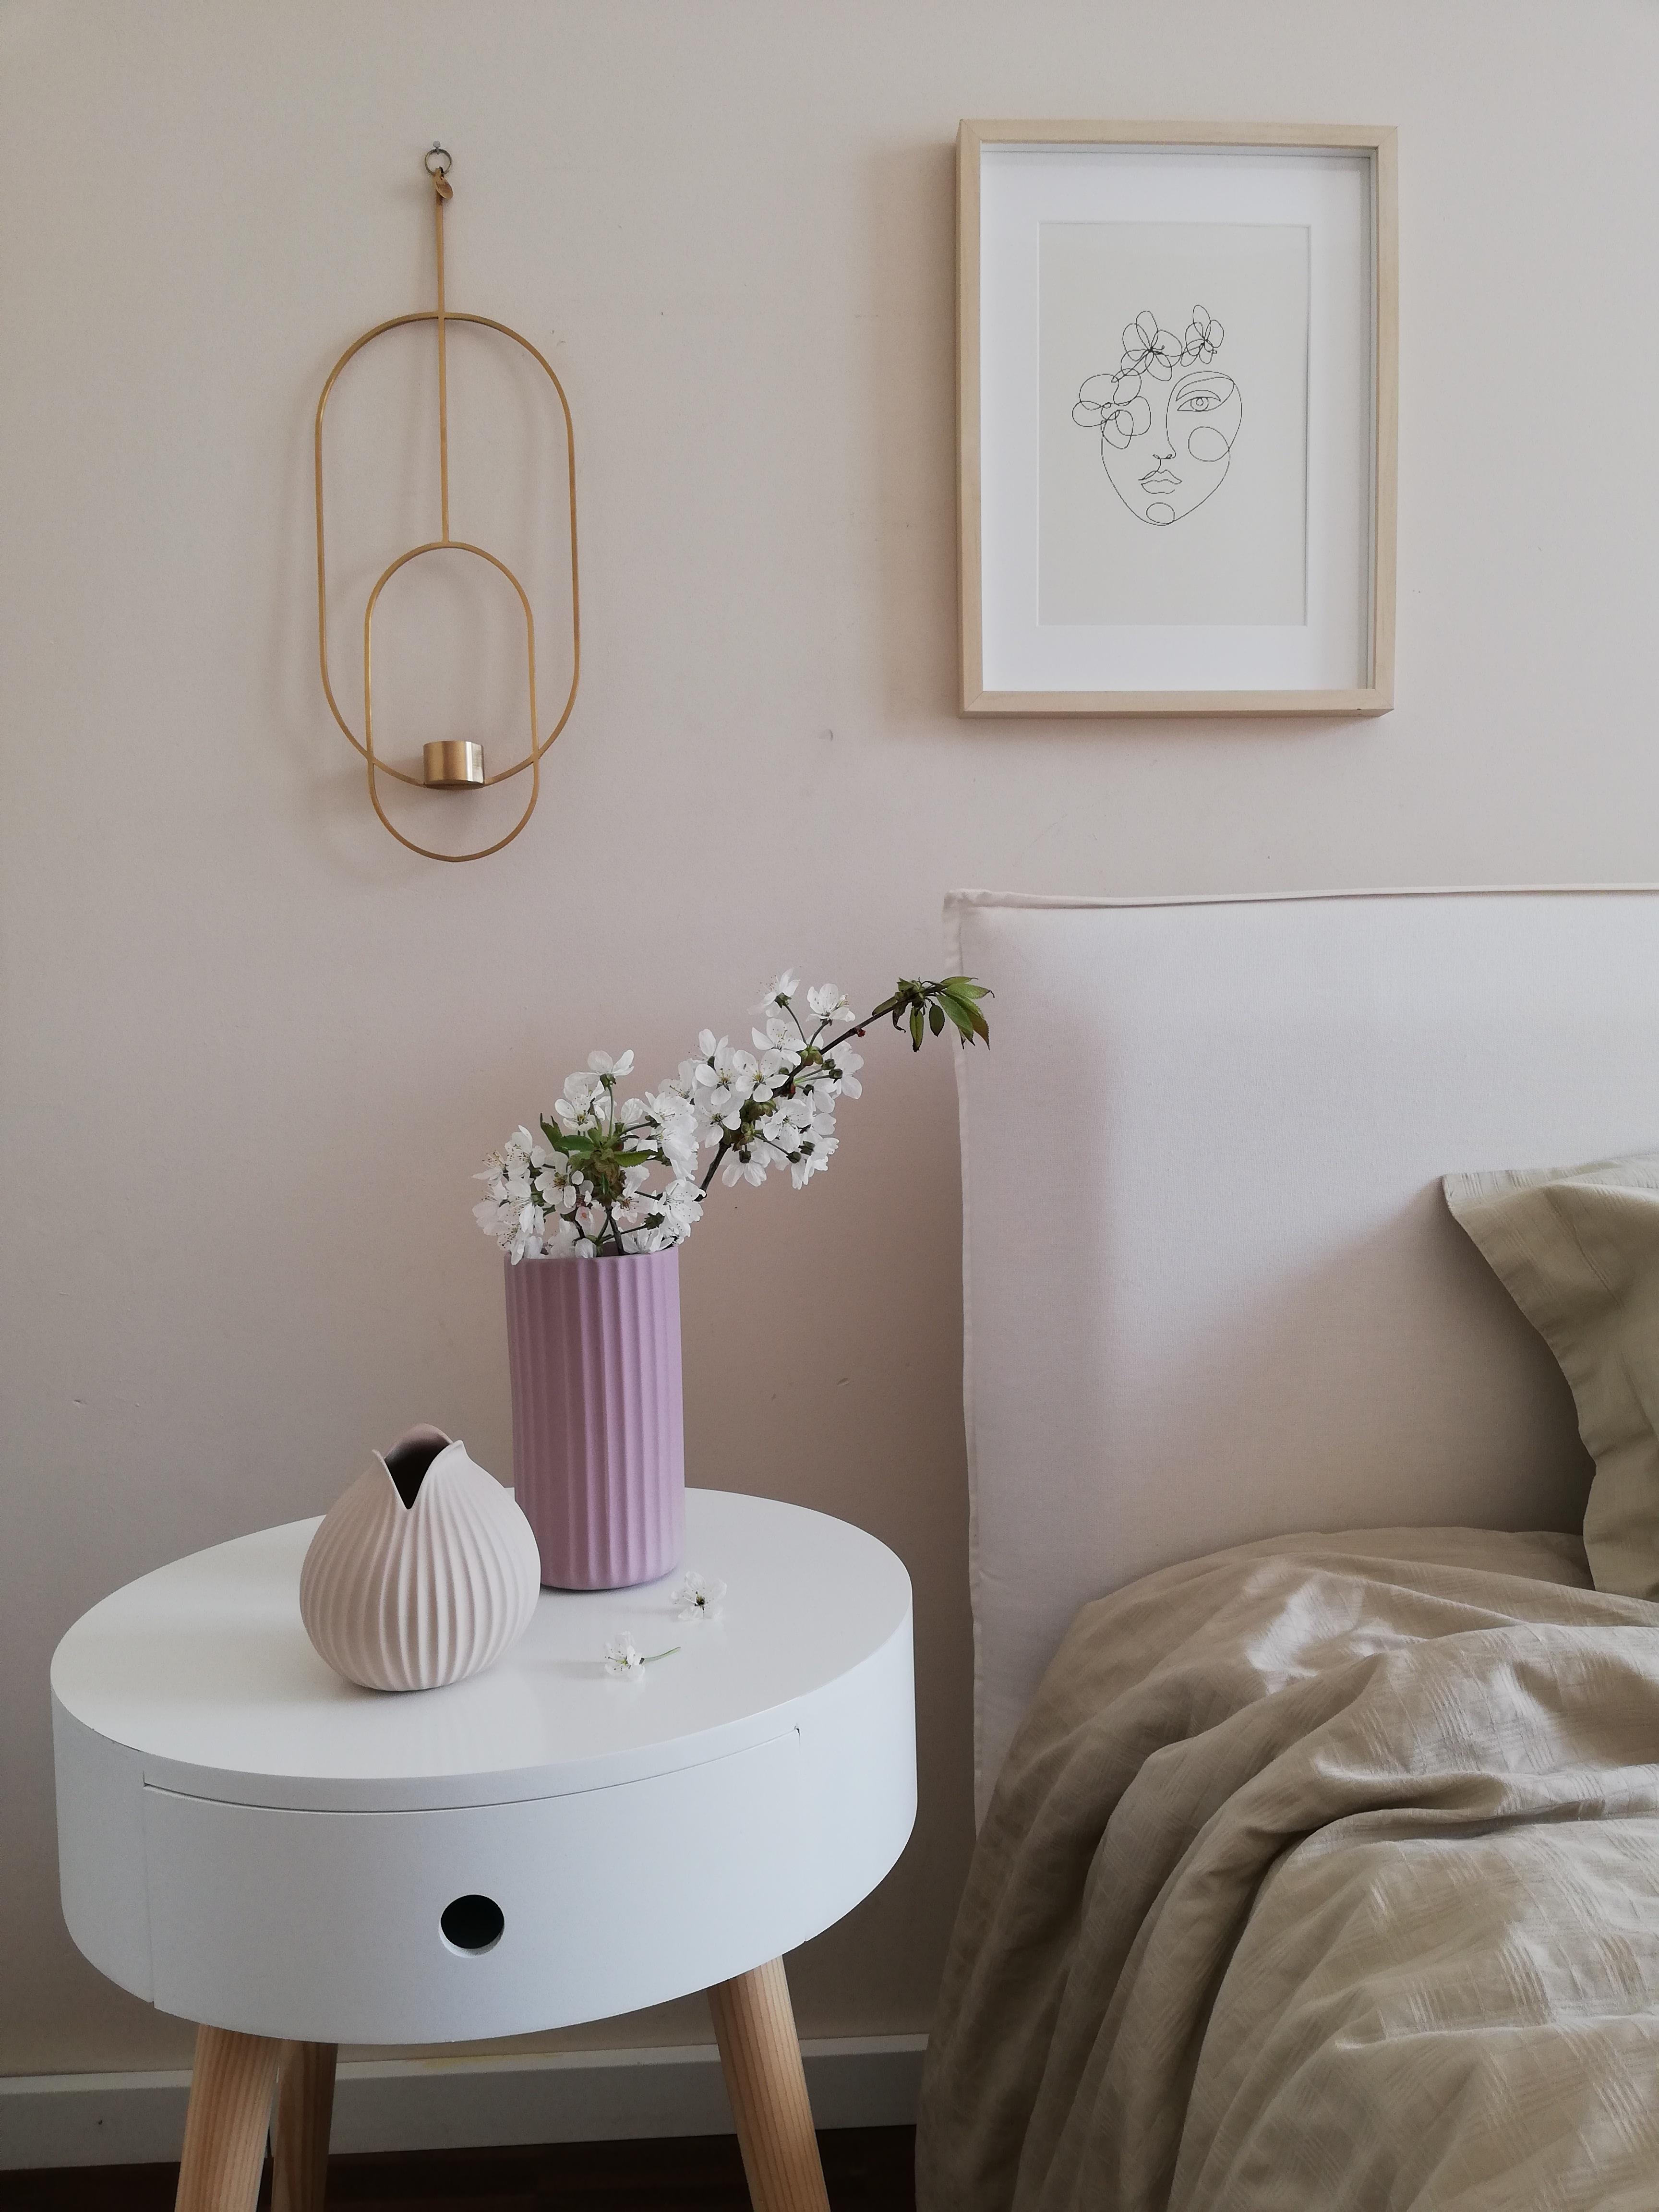 Passend zur aktuellen Couch Ausgabe und dem Thema "Pastell-Power"!
#schlafzimmer#frühling#vasenliebe 
